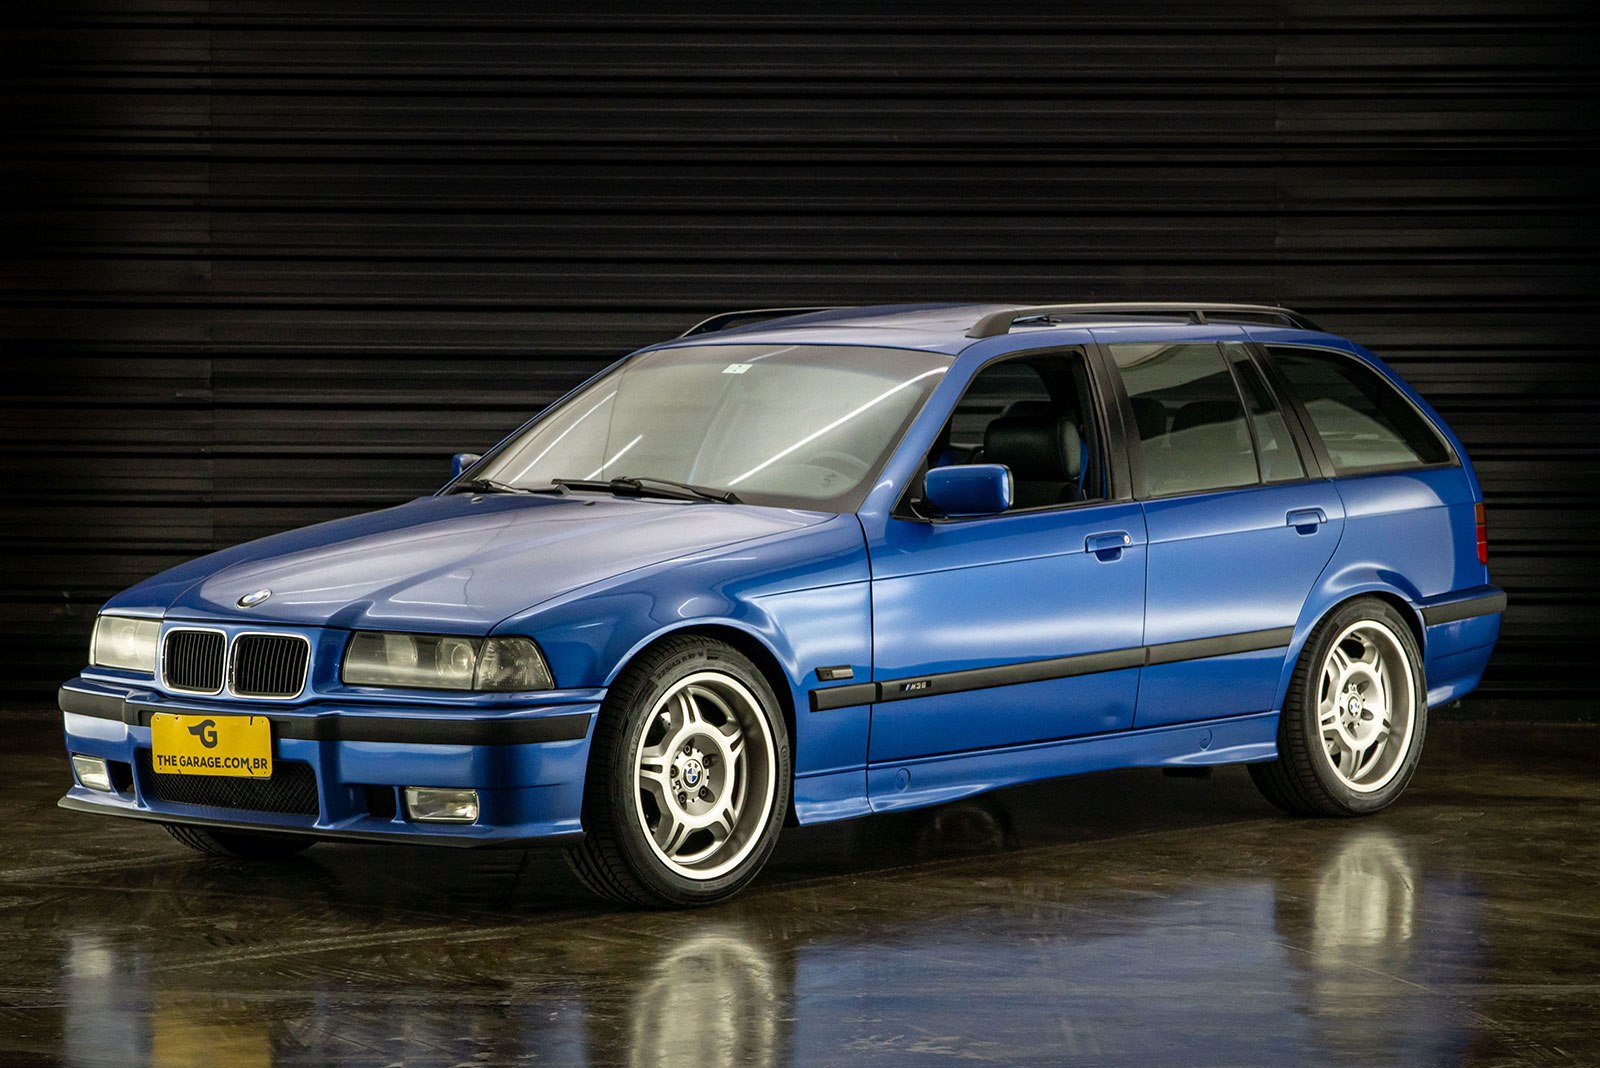 1996BMW328iTouring-E36-venda-sao-paulo-for-sale-classicos-a-melhor-loja-de-carros-antigos-acervo-de-carros